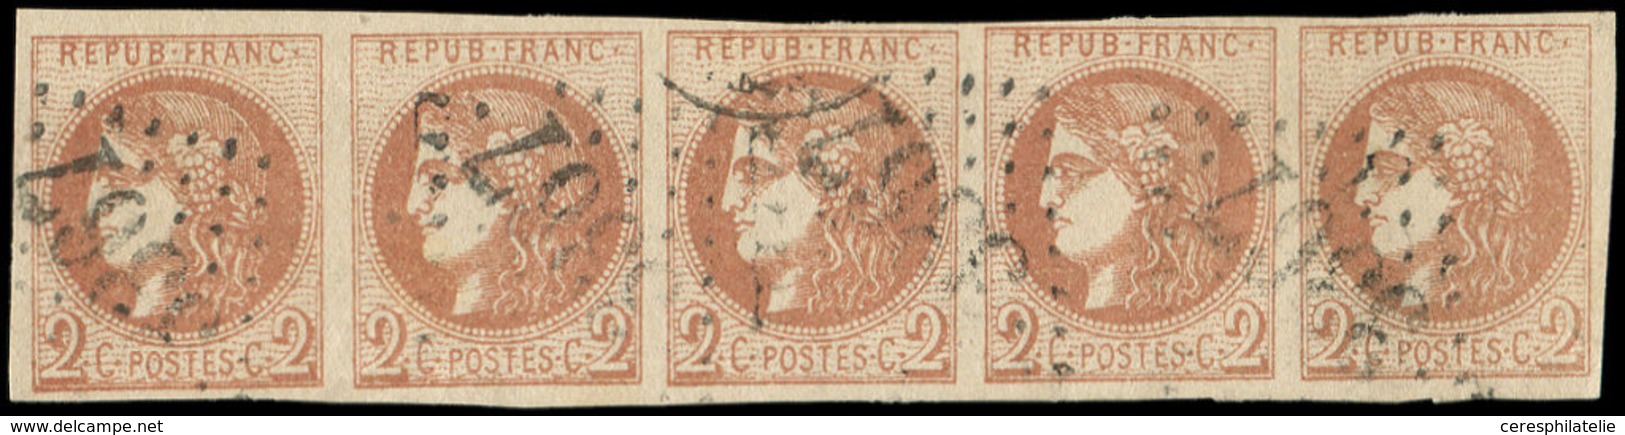 EMISSION DE BORDEAUX - 40B   2c. Brun-rouge, R II, BANDE De 5 Obl. GC 3367, Pos. 11 à 15, TTB - 1870 Bordeaux Printing